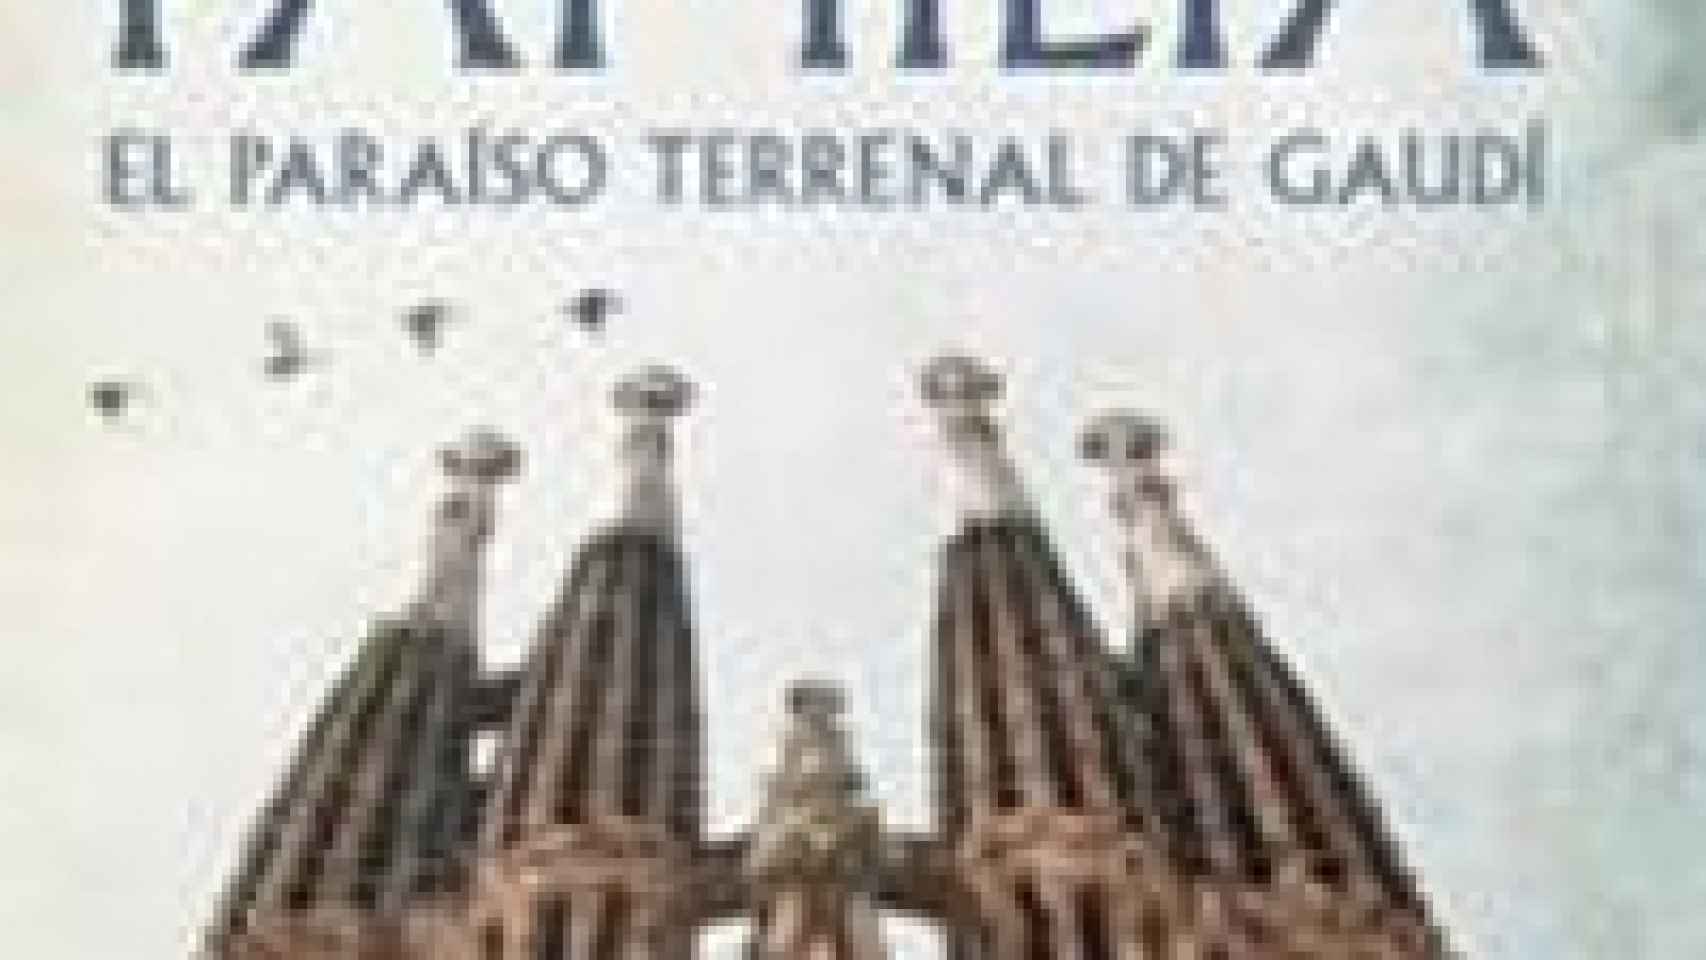 Image: La sagrada familia. El paraíso terrenal de Gaudí